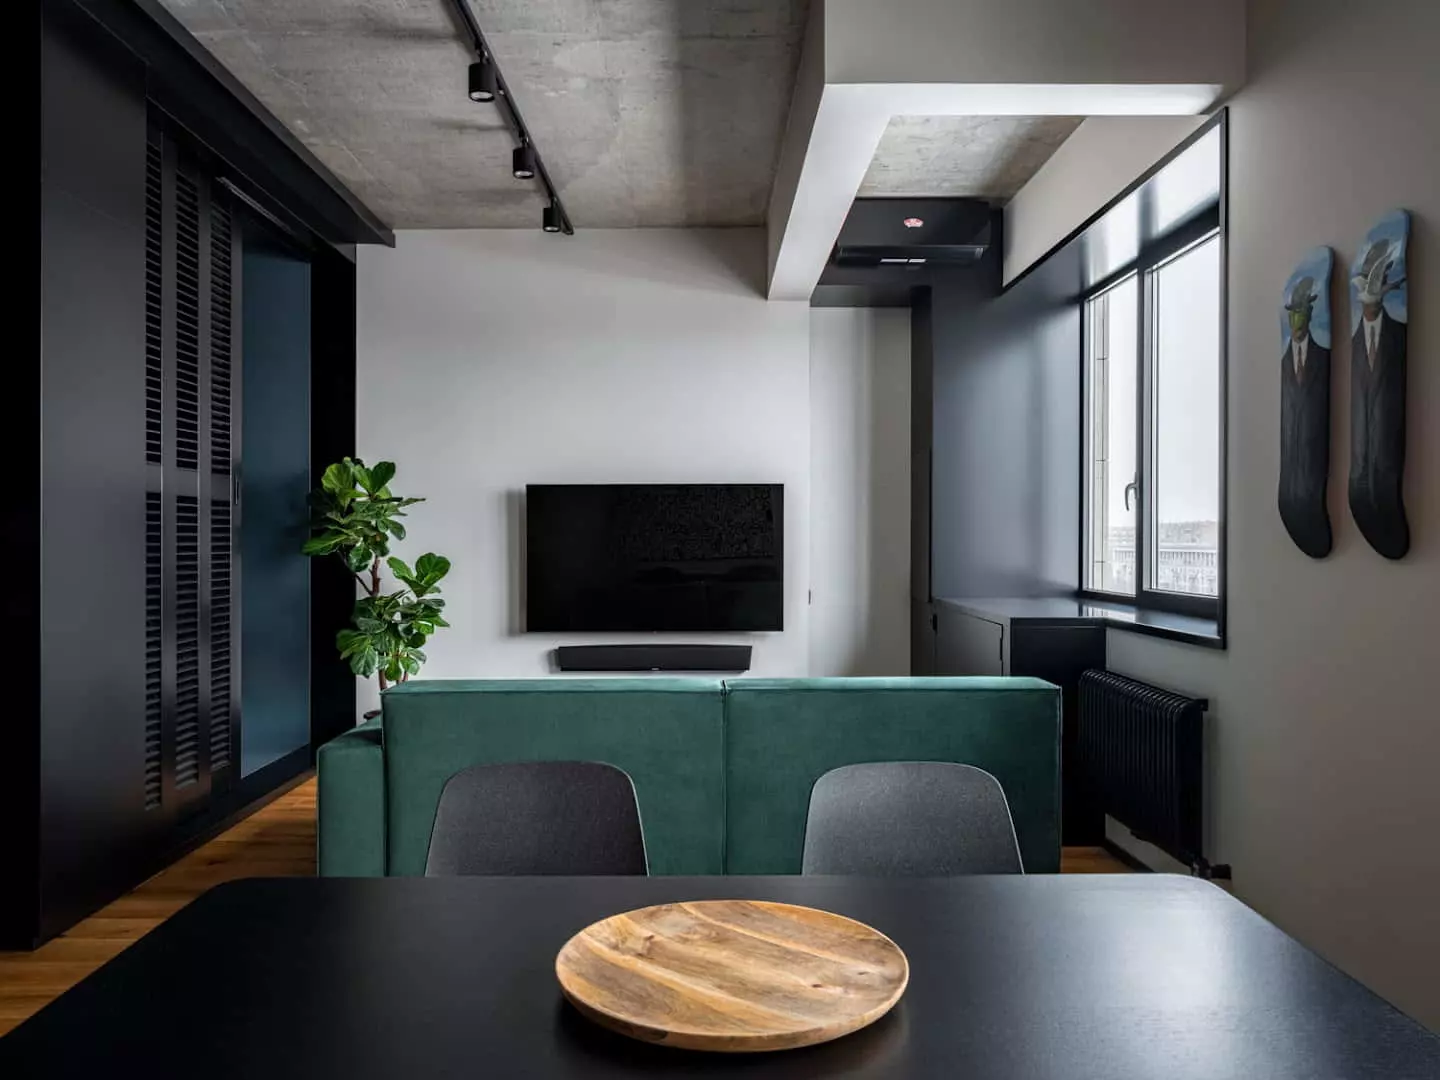 nét tối giản bên trong căn hộ 42 m2 đã mang đến sự thay đổi mới về một không gian sống thông thoáng và đầy đủ tiện ích